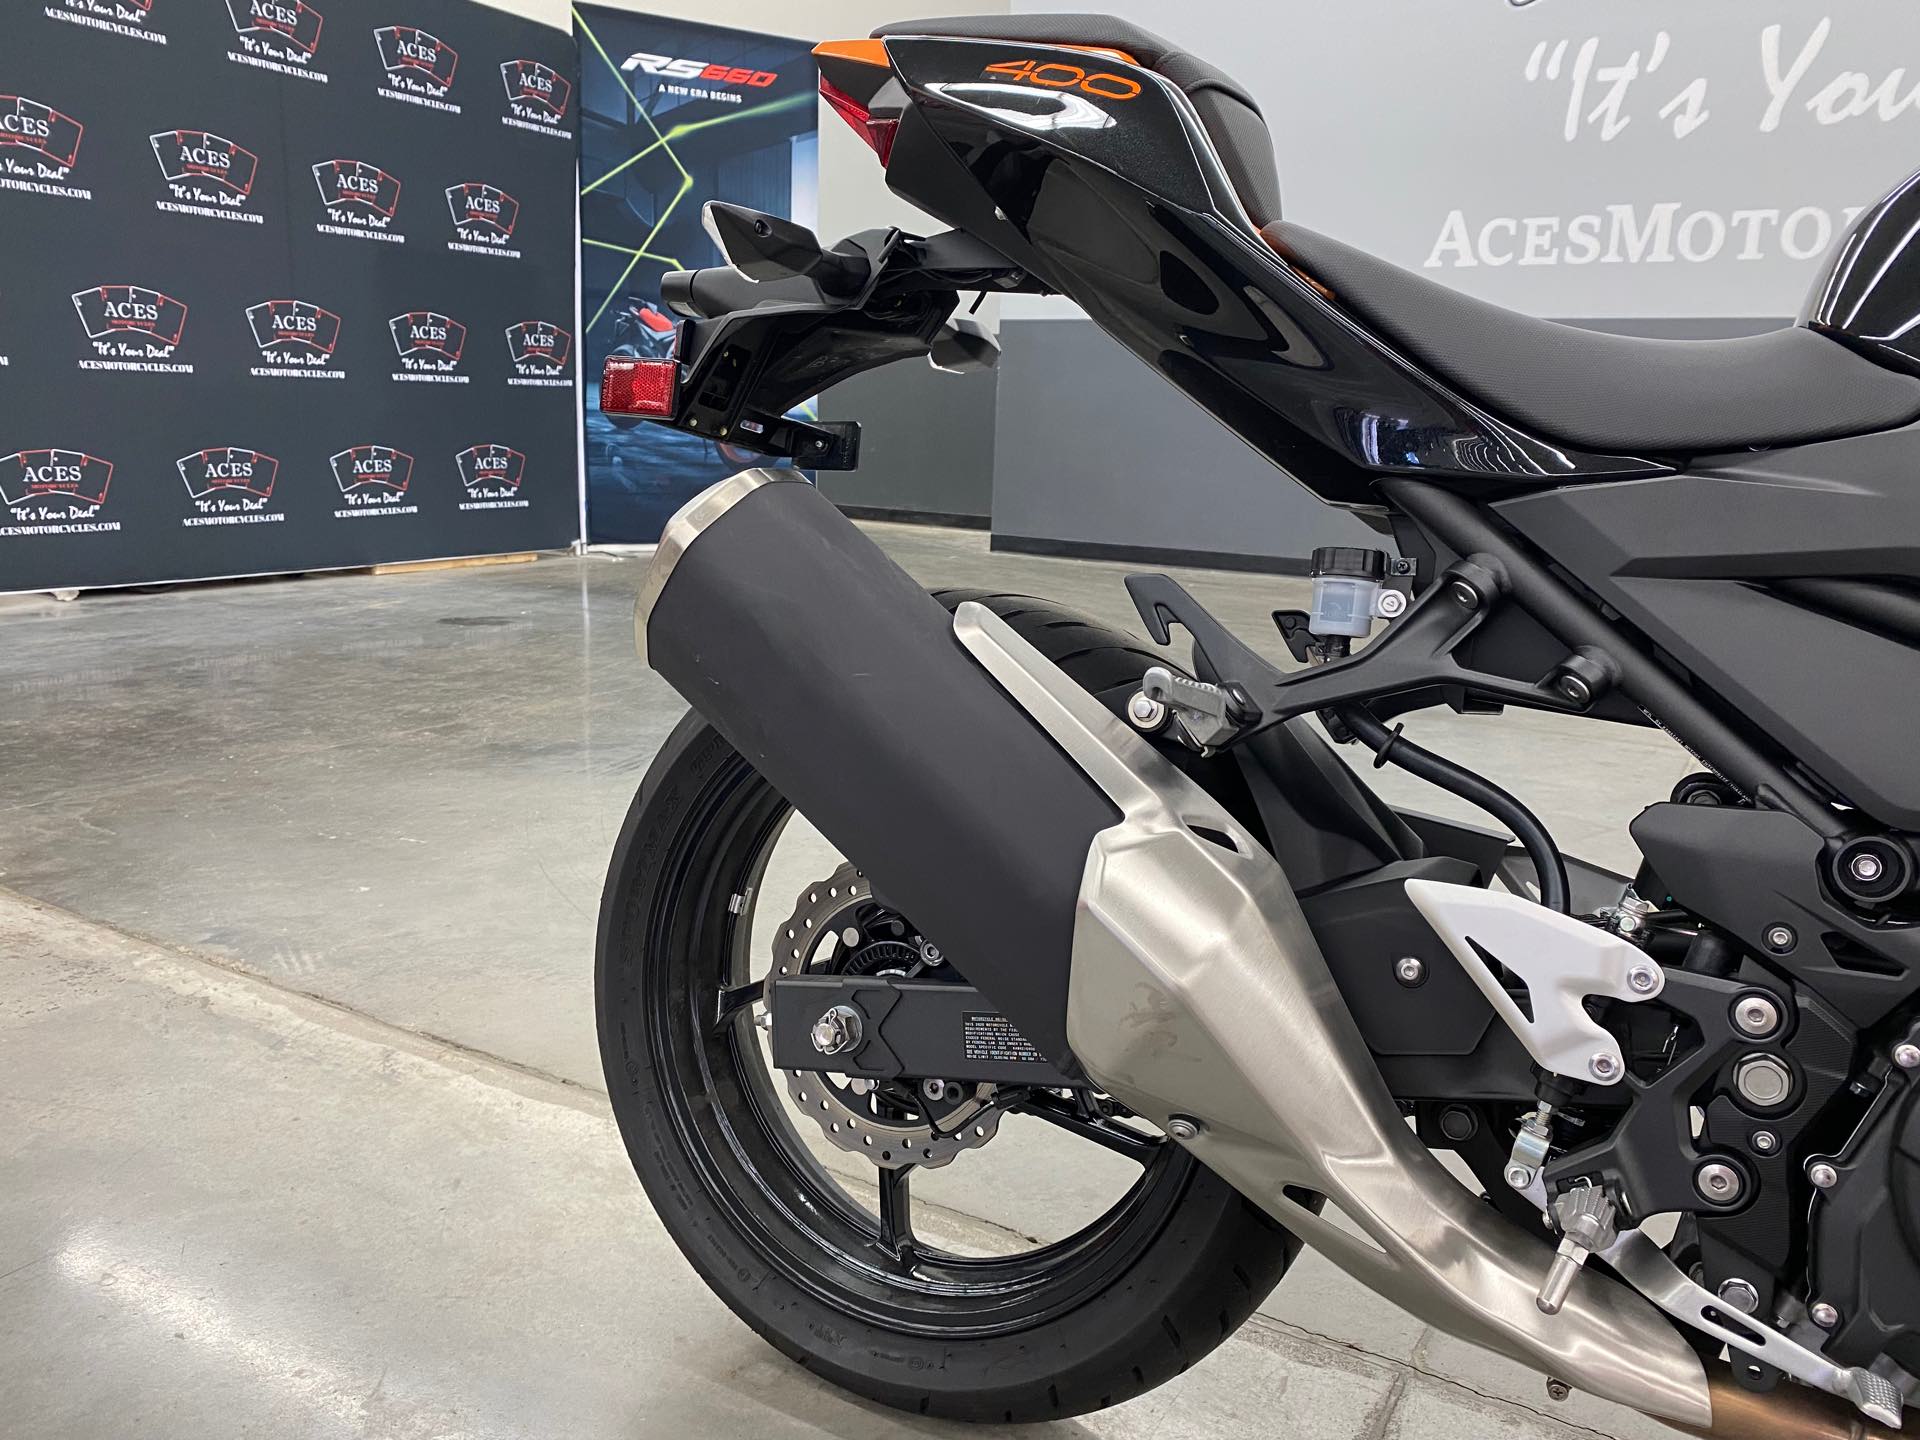 2020 Kawasaki Z400 ABS at Aces Motorcycles - Denver